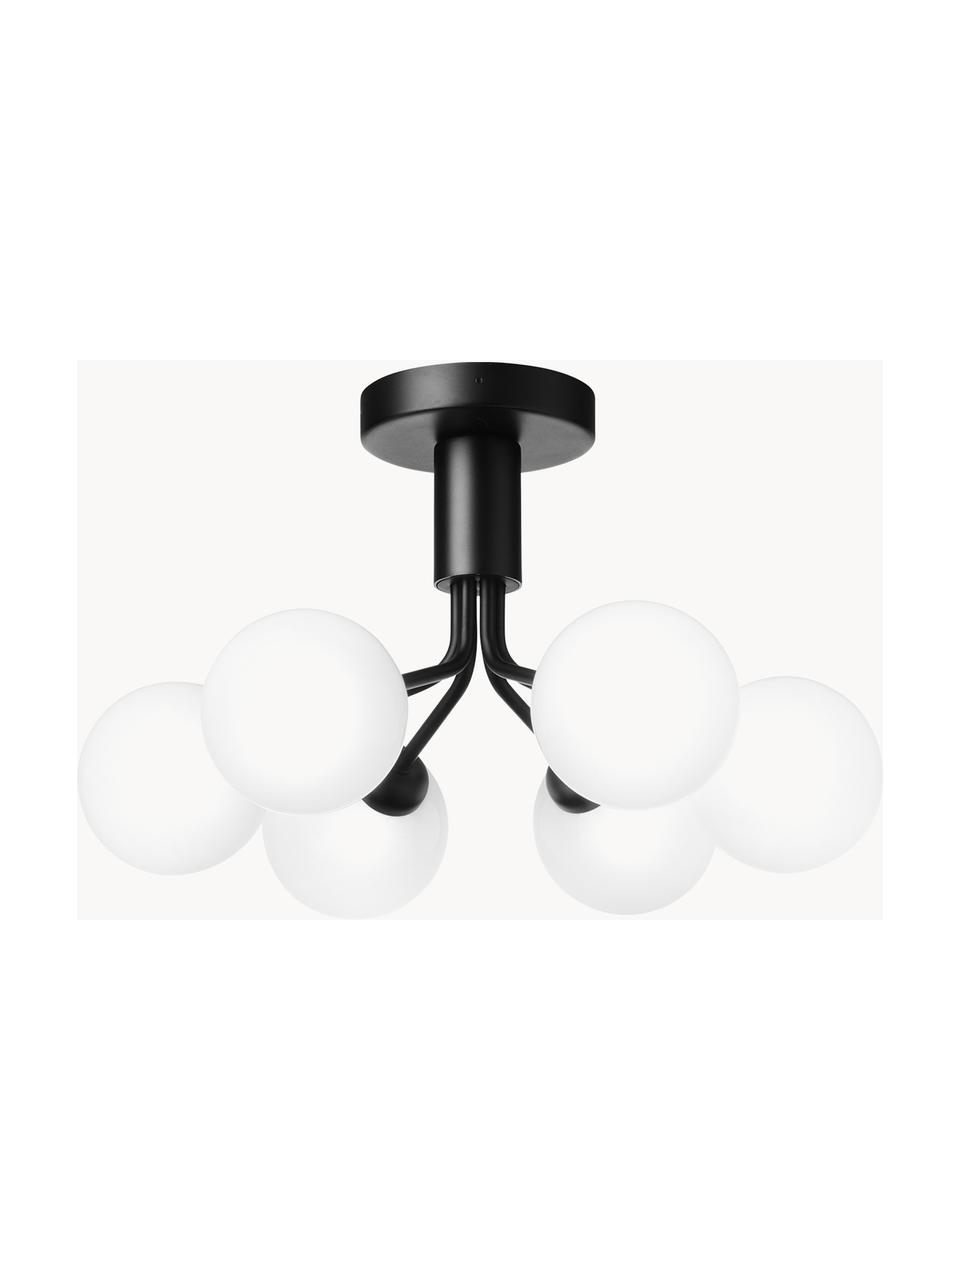 Hanglamp met glazen bollen Apiales, Zwart, wit, Ø 50 x H 29 cm